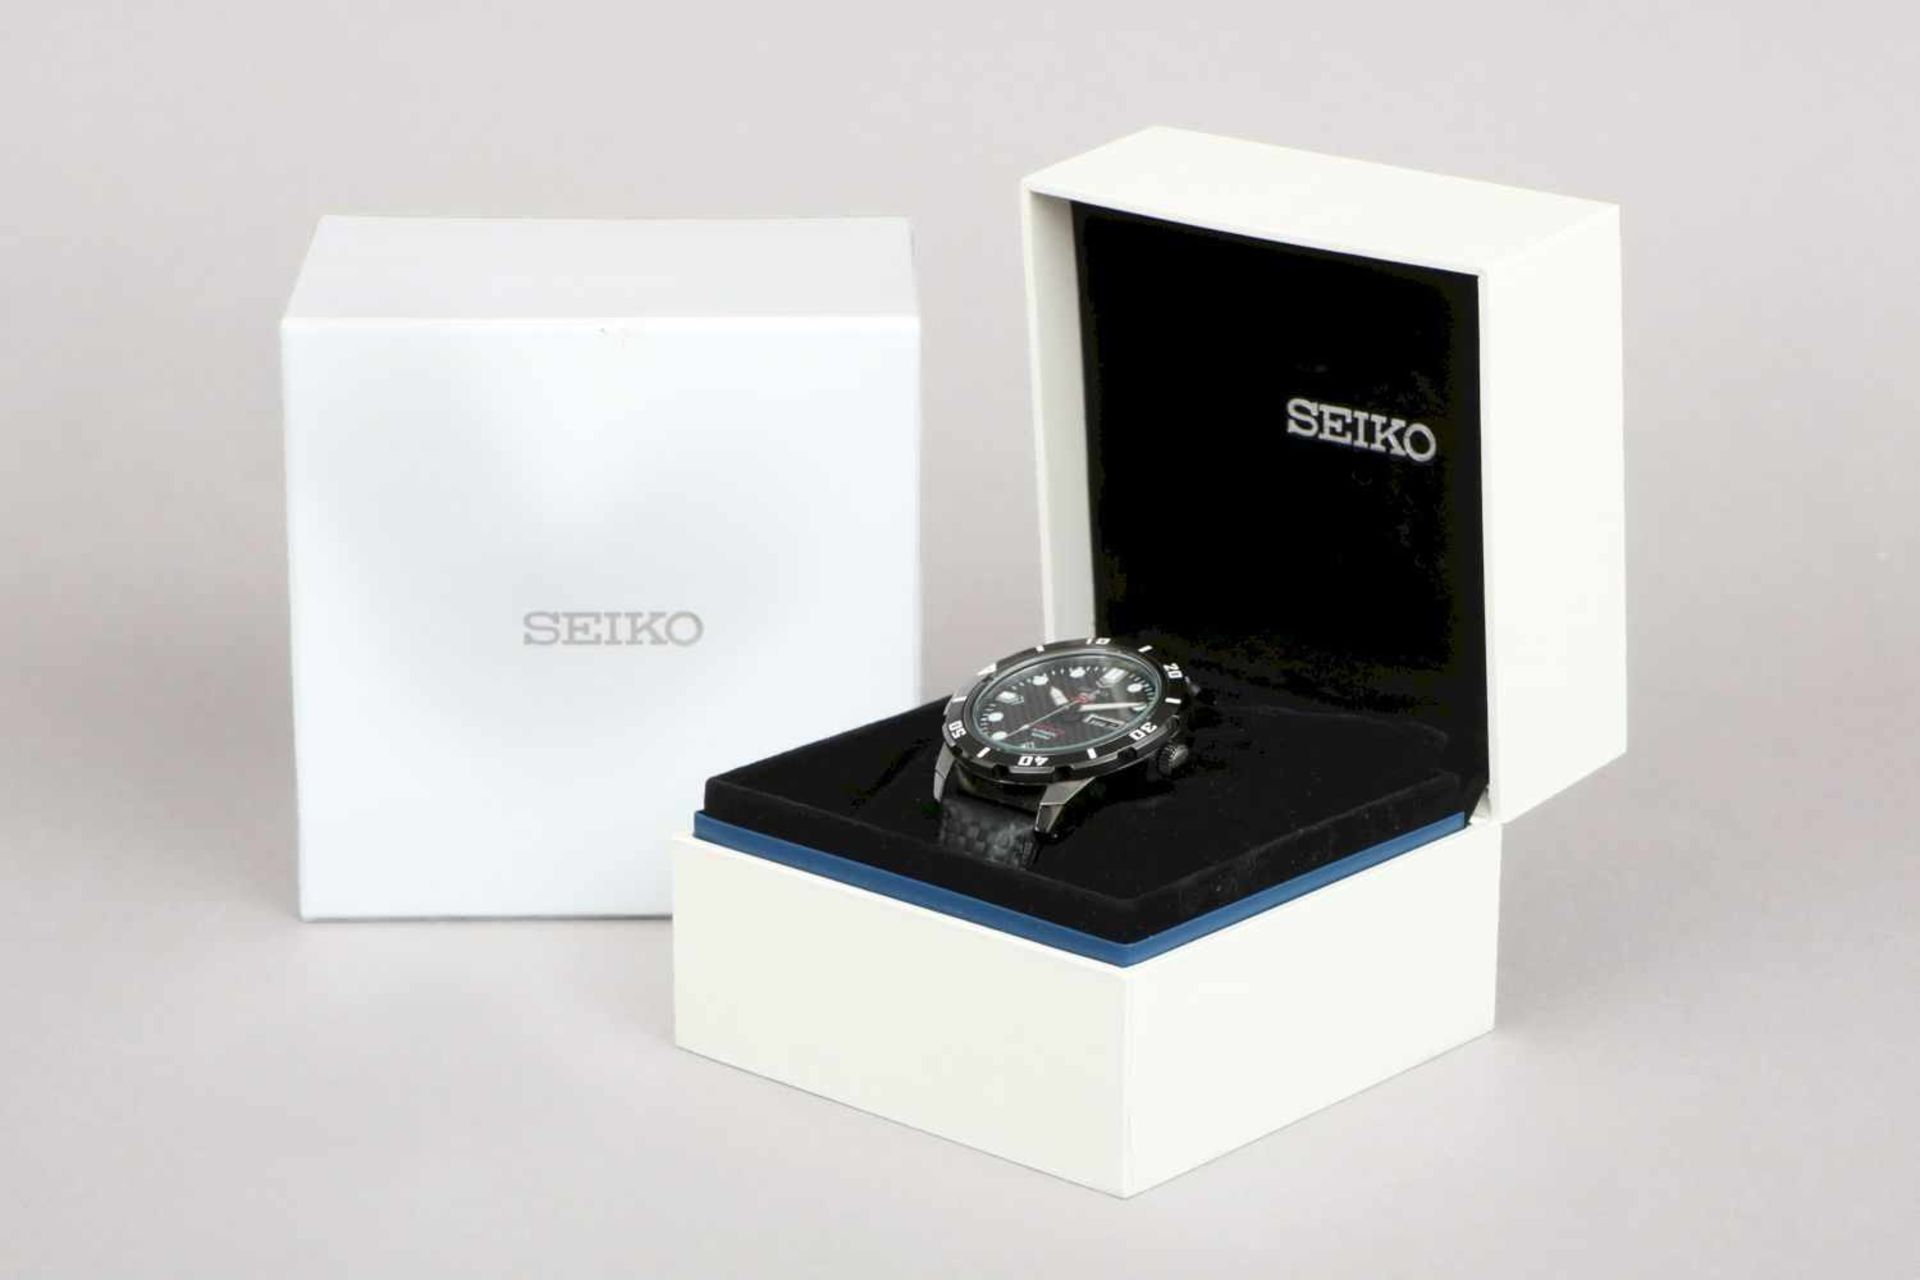 SEIKO 5 Sports Limited Edition ArmbanduhrAutomatikwerk (Seiko 4R36), Modell SRP721K1, schwarz-